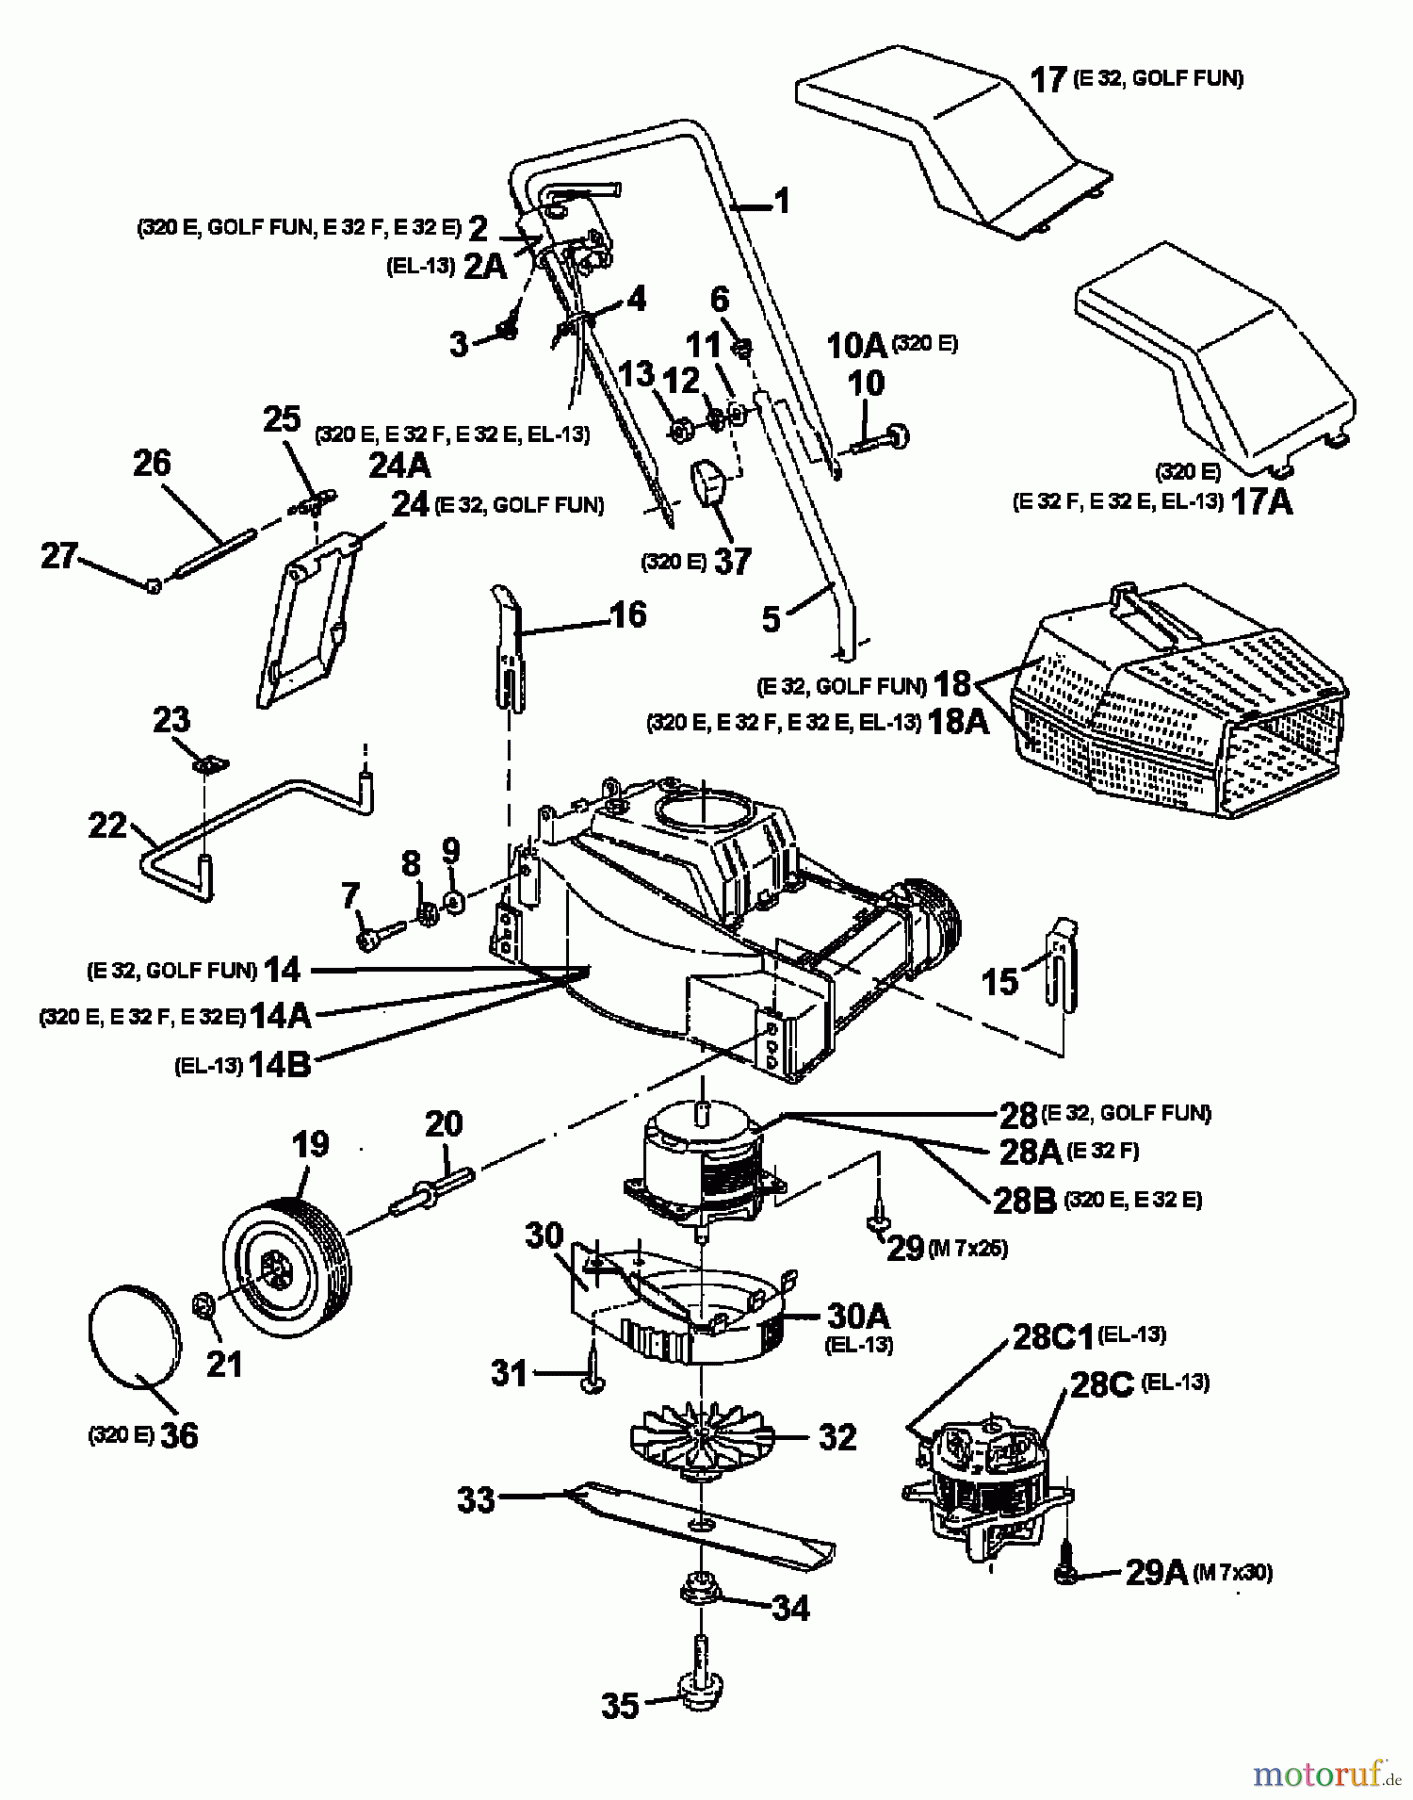  Raiffeisen Elektromäher E 32 18A-A0A-628  (1998) Grundgerät